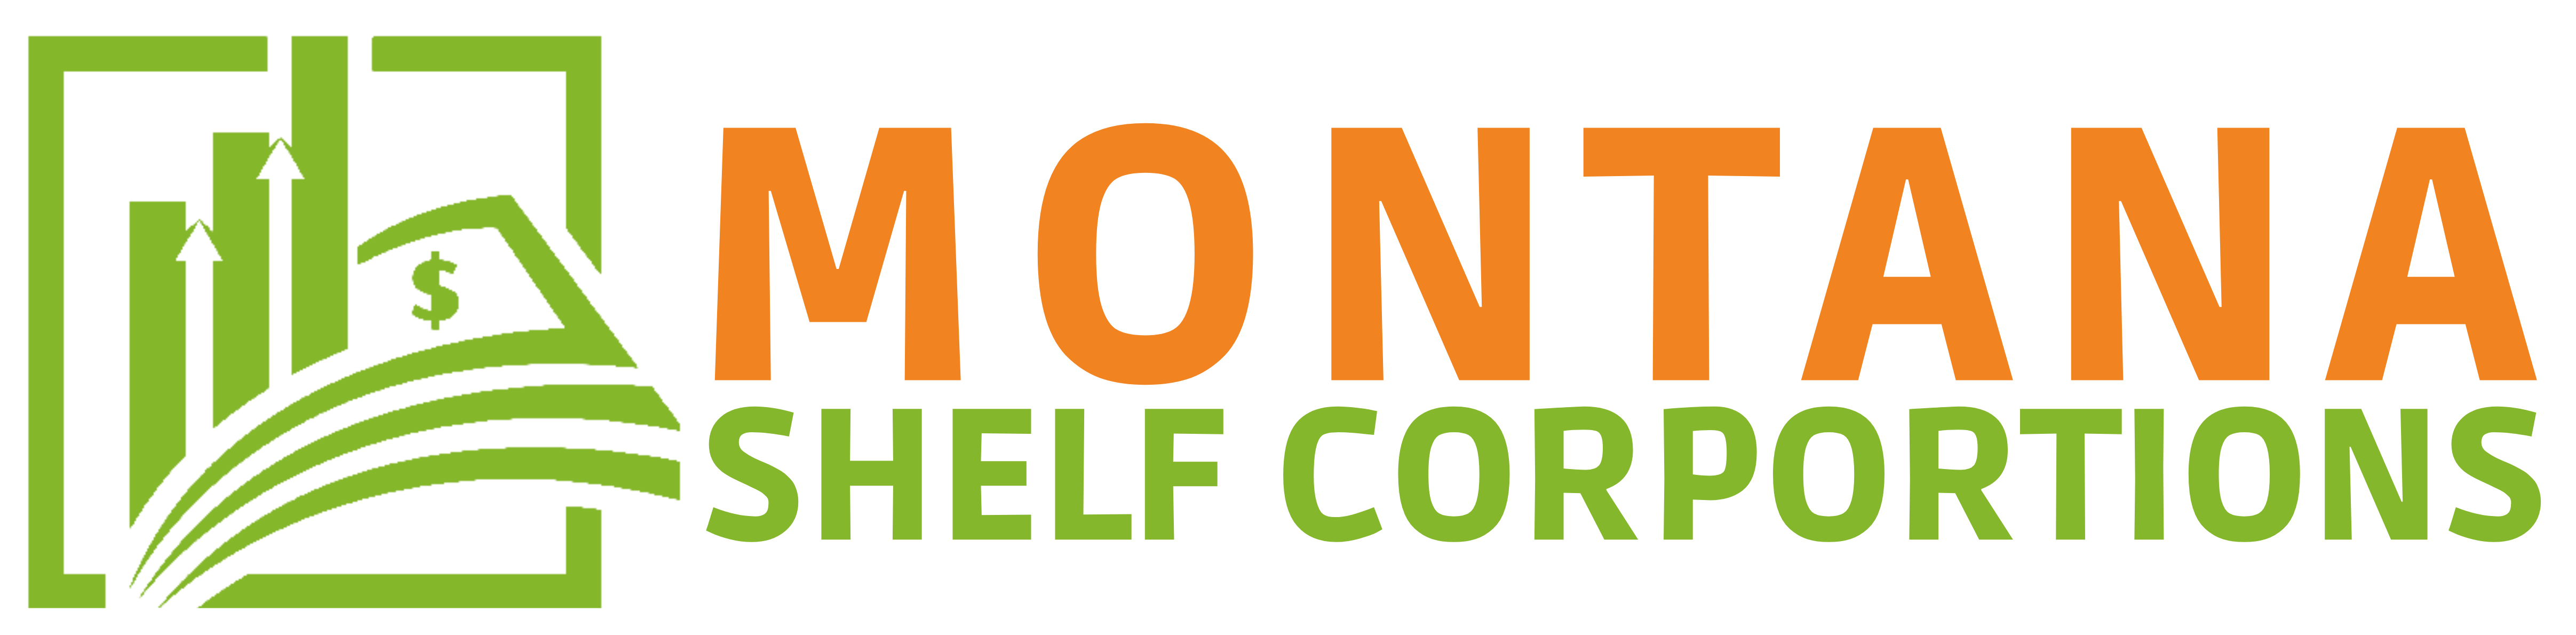 Montana Shelf Corporations Logo